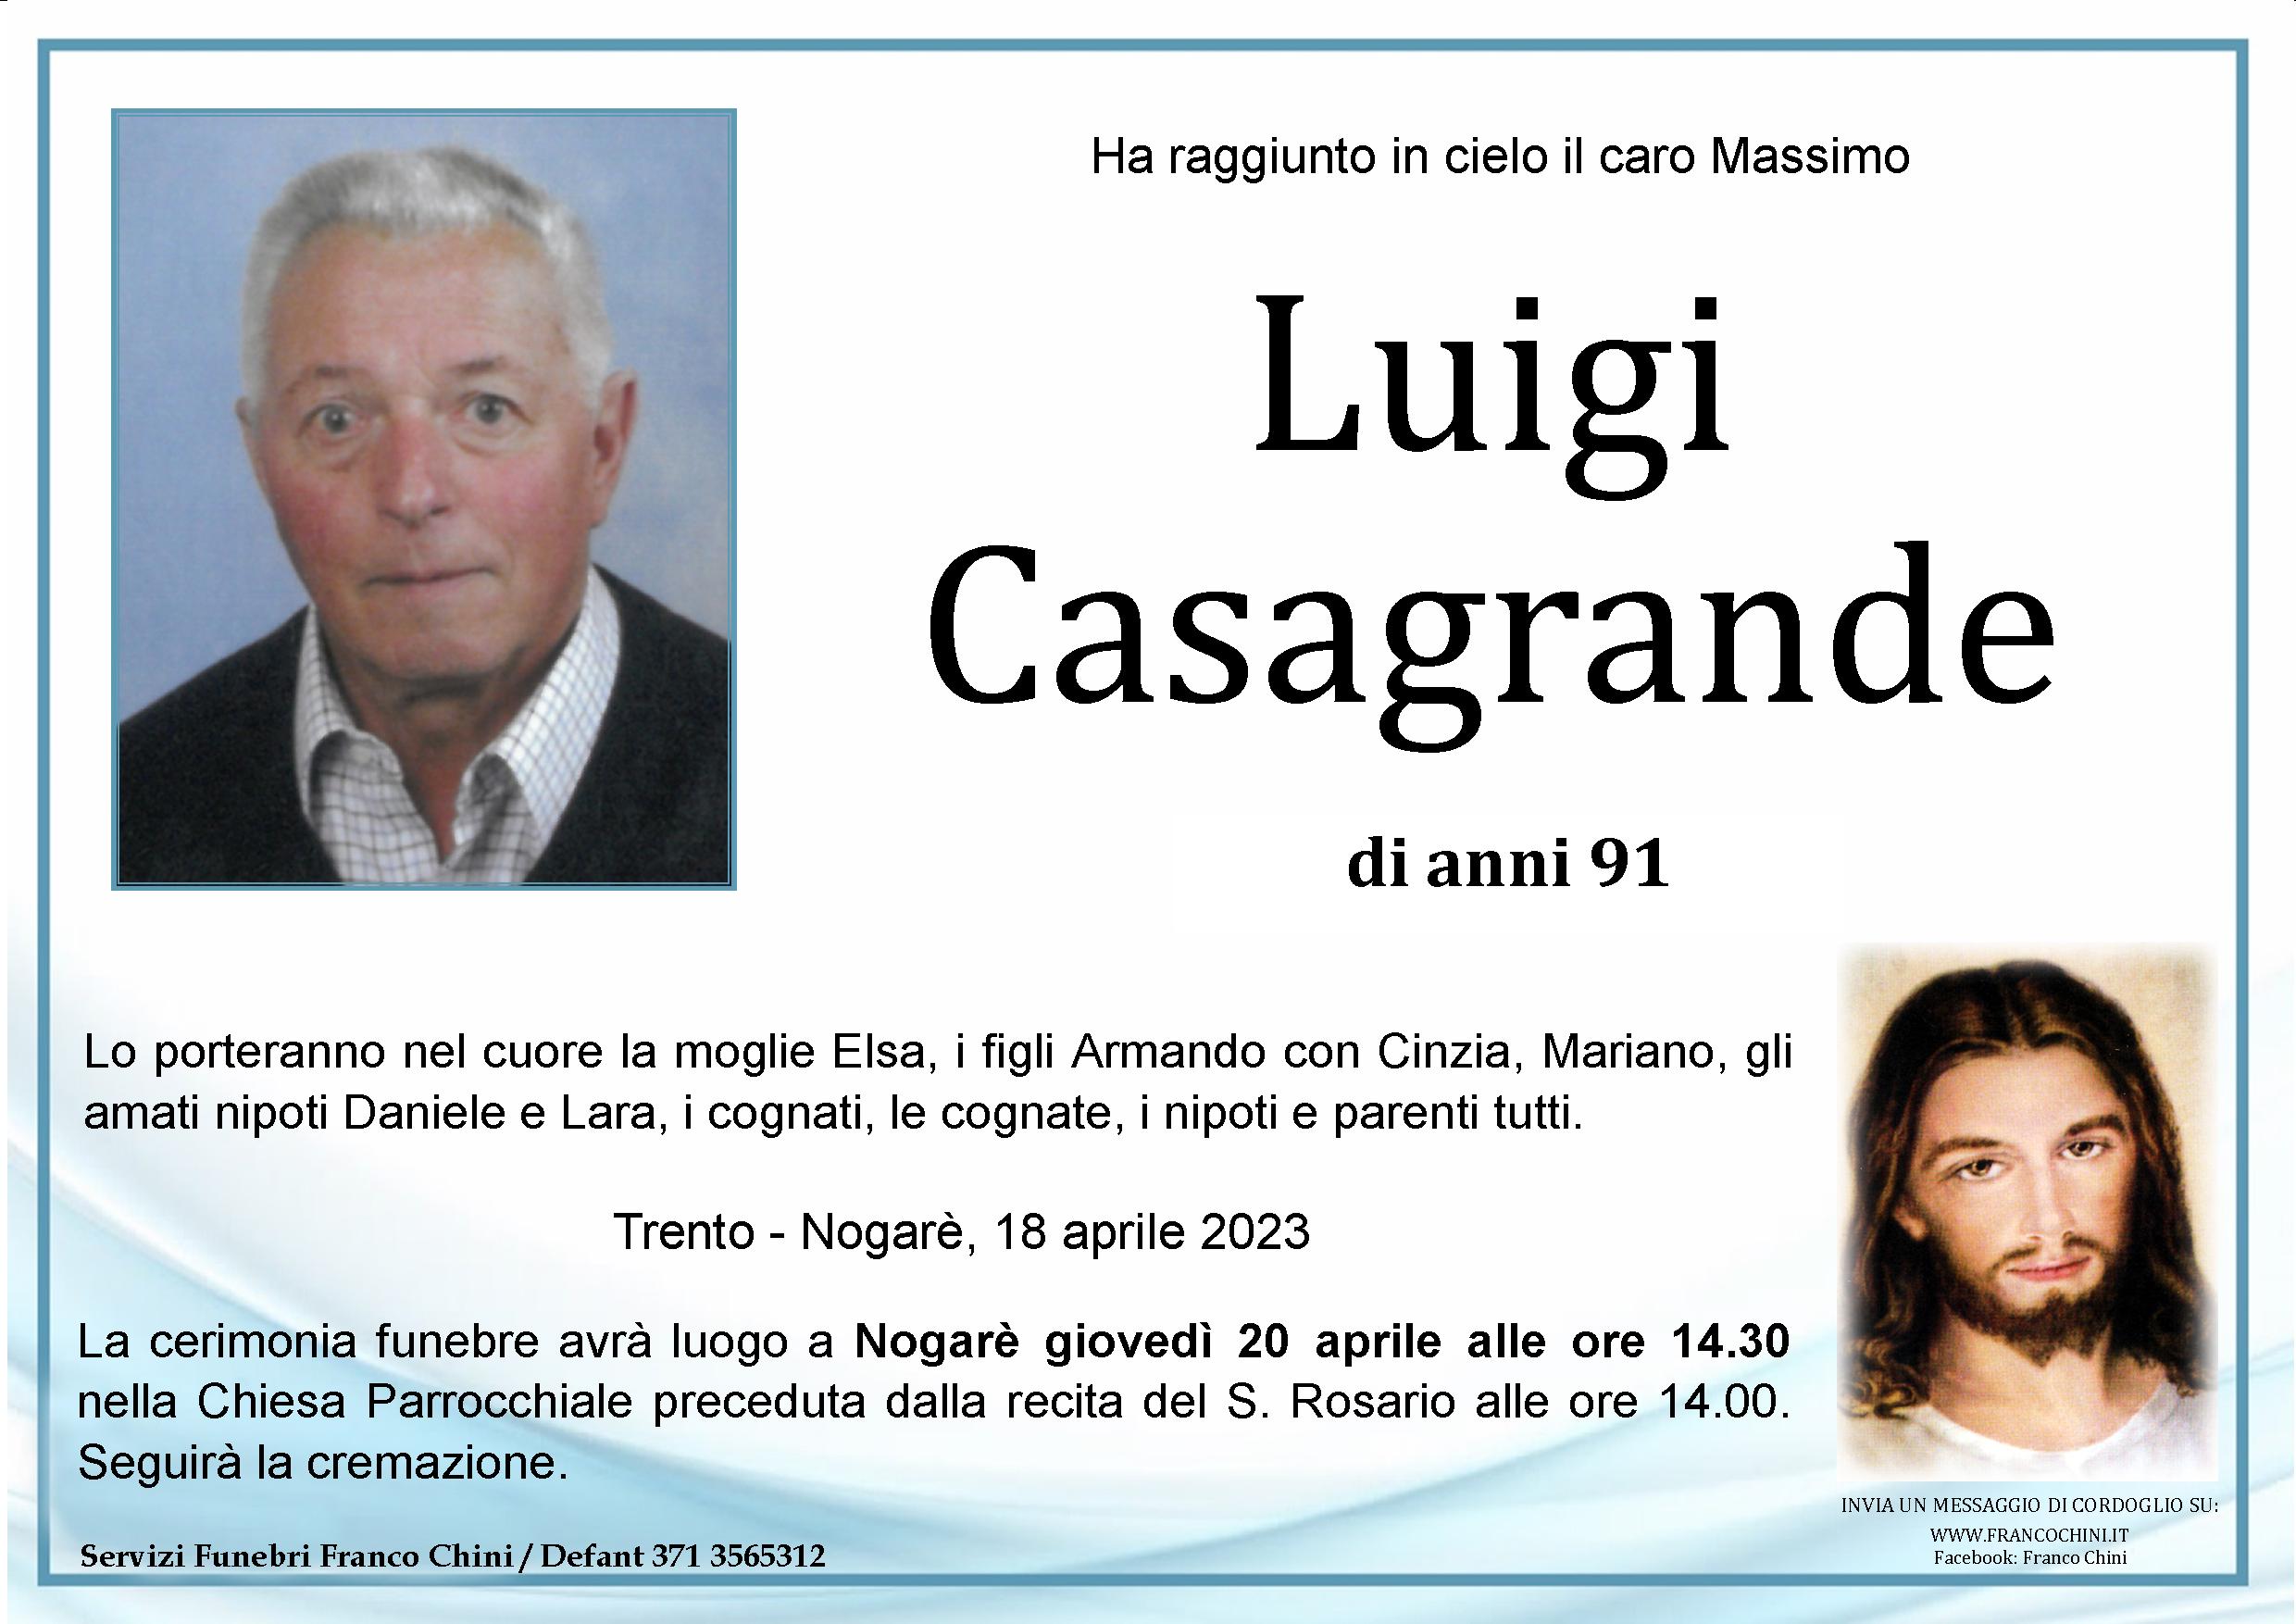 Luigi Casagrande